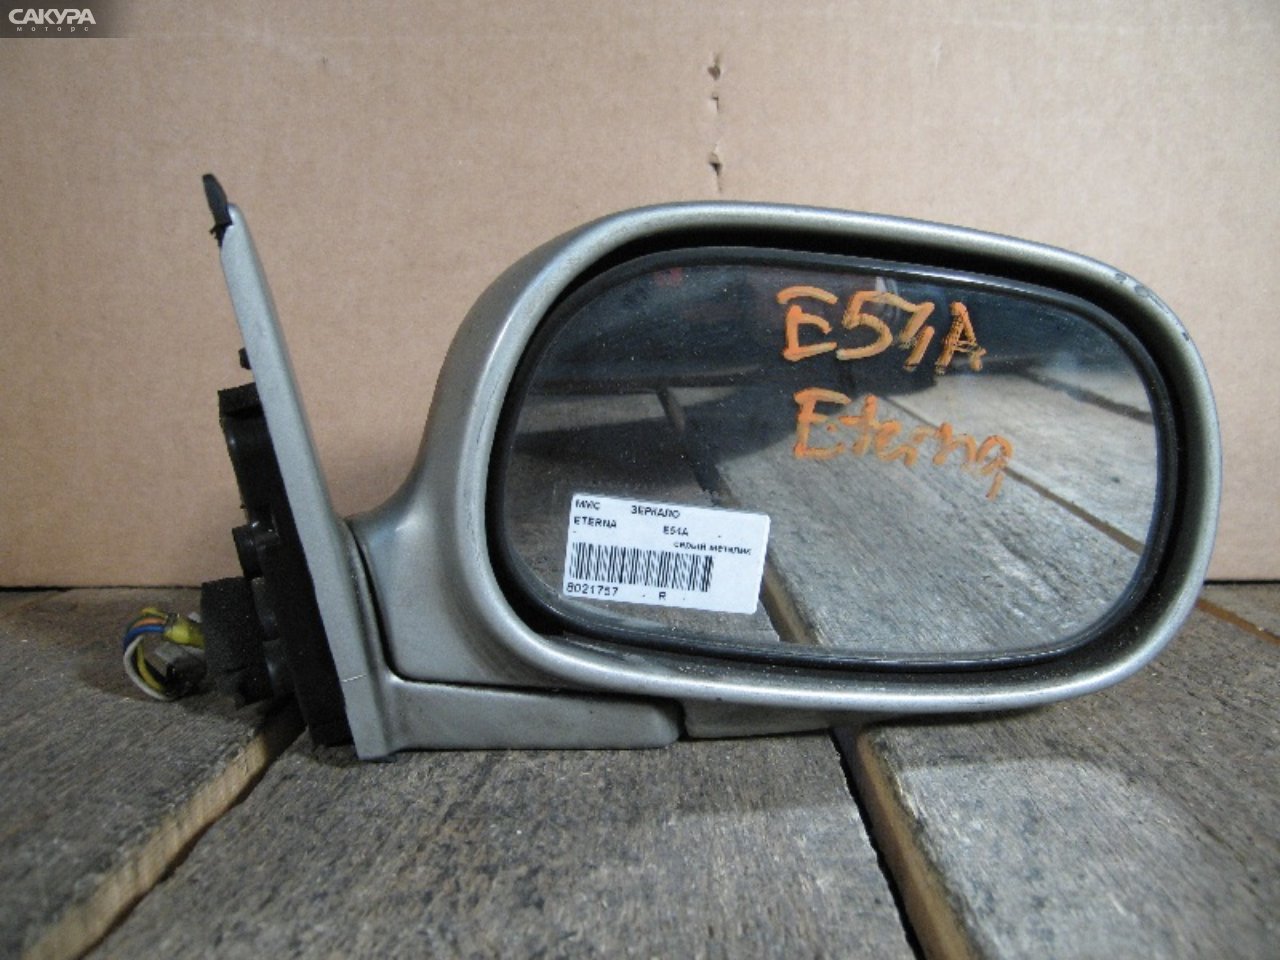 Зеркало боковое правое Mitsubishi Eterna E54A: купить в Сакура Абакан.